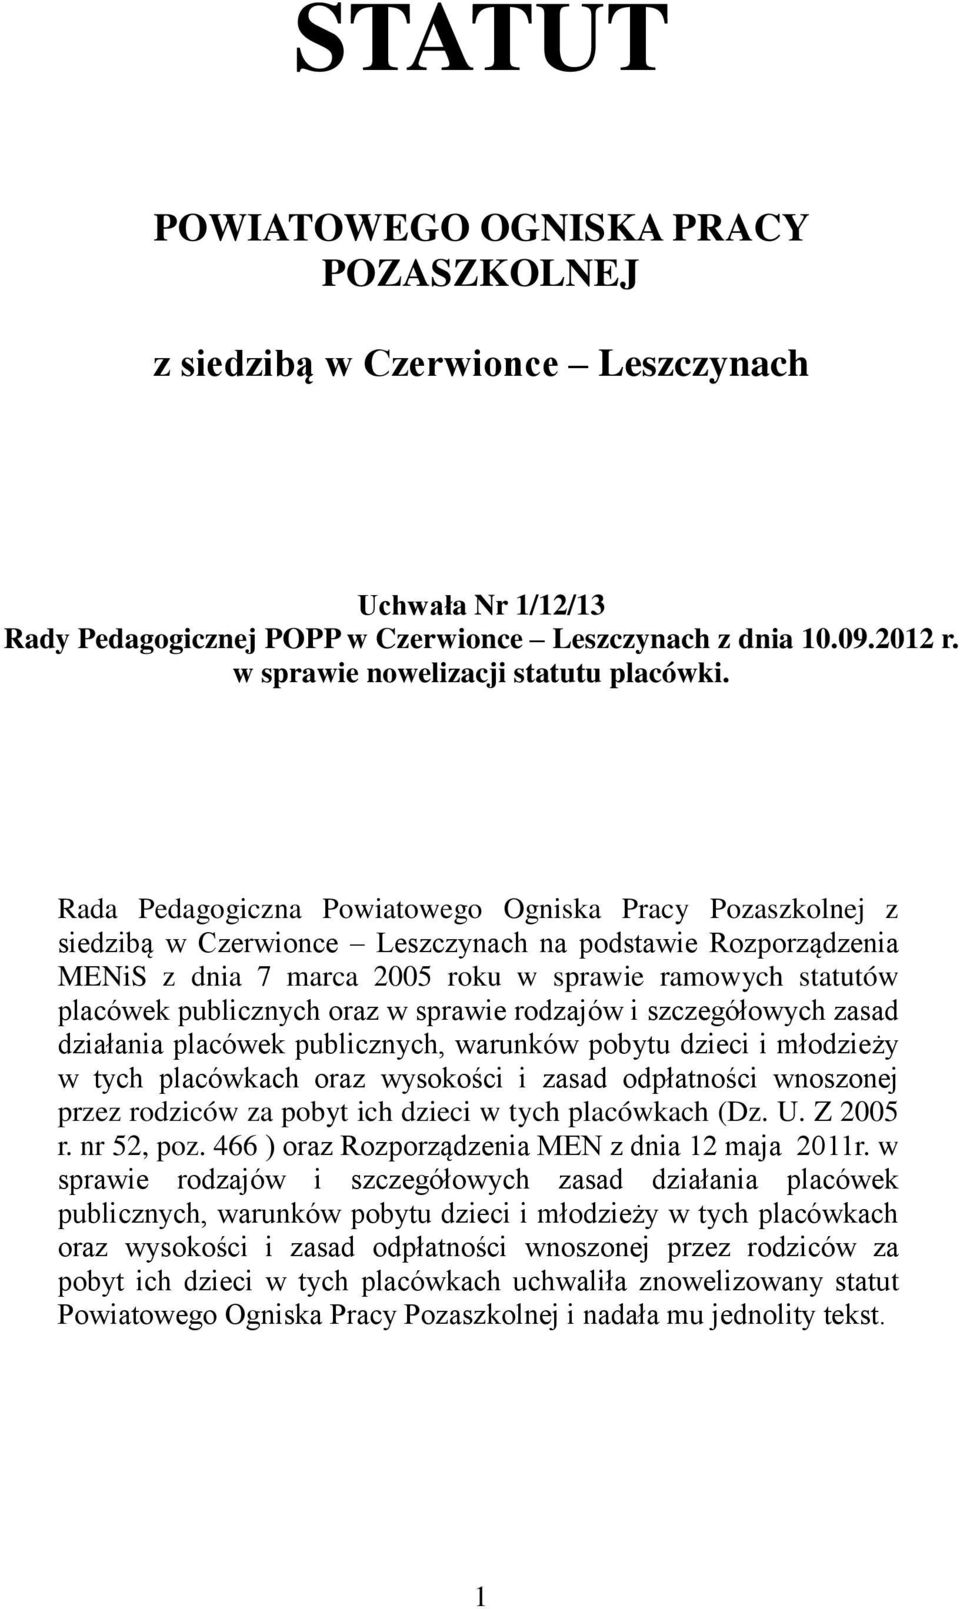 Rada Pedagogiczna Powiatowego Ogniska Pracy Pozaszkolnej z siedzibą w Czerwionce Leszczynach na podstawie Rozporządzenia MENiS z dnia 7 marca 2005 roku w sprawie ramowych statutów placówek